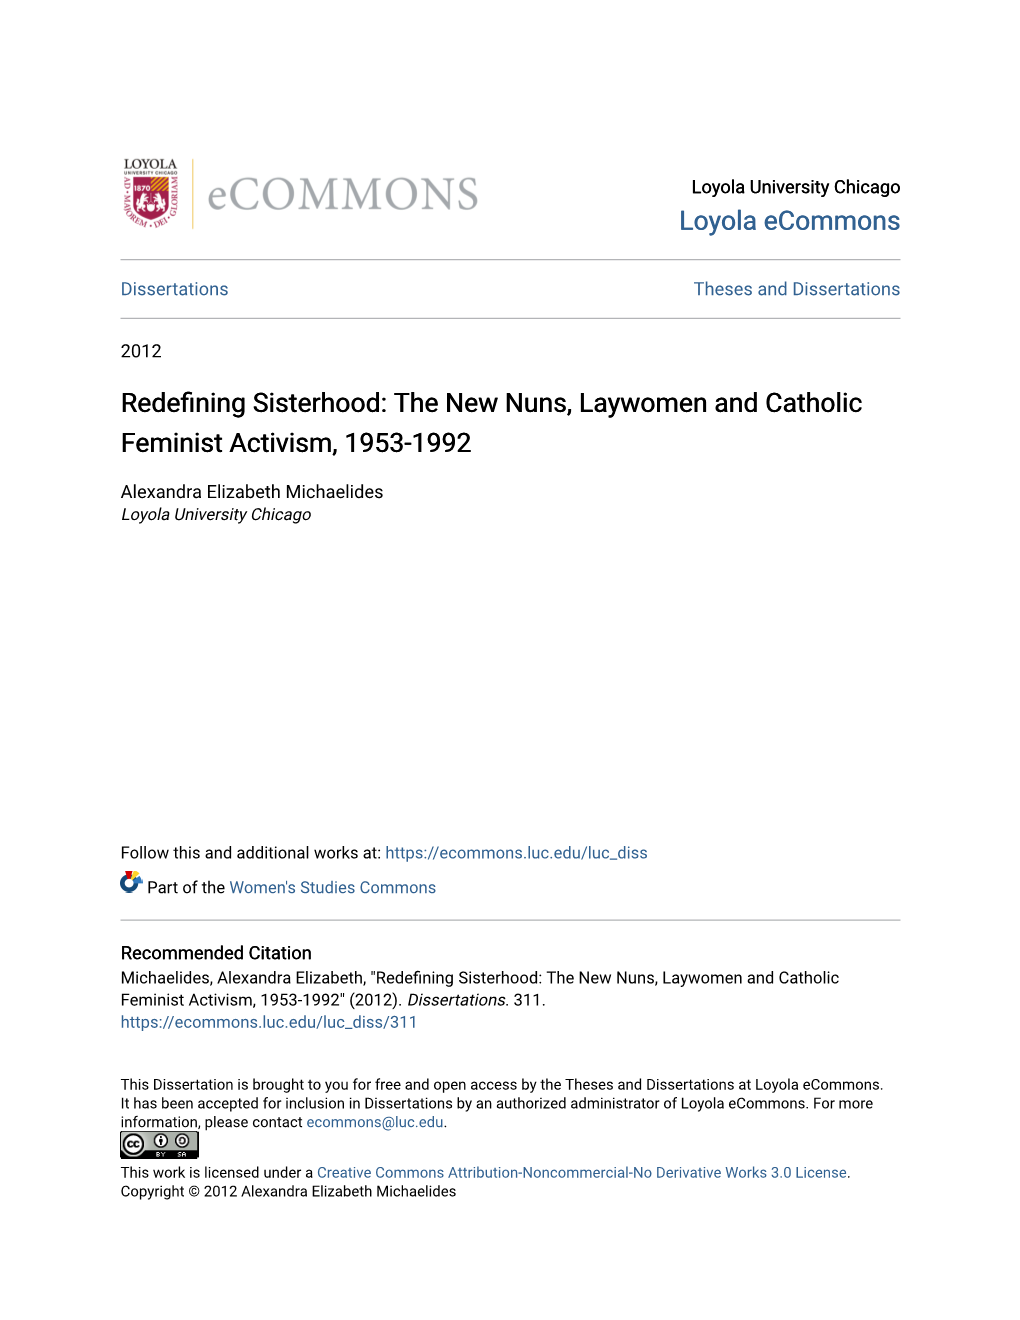 The New Nuns, Laywomen and Catholic Feminist Activism, 1953-1992